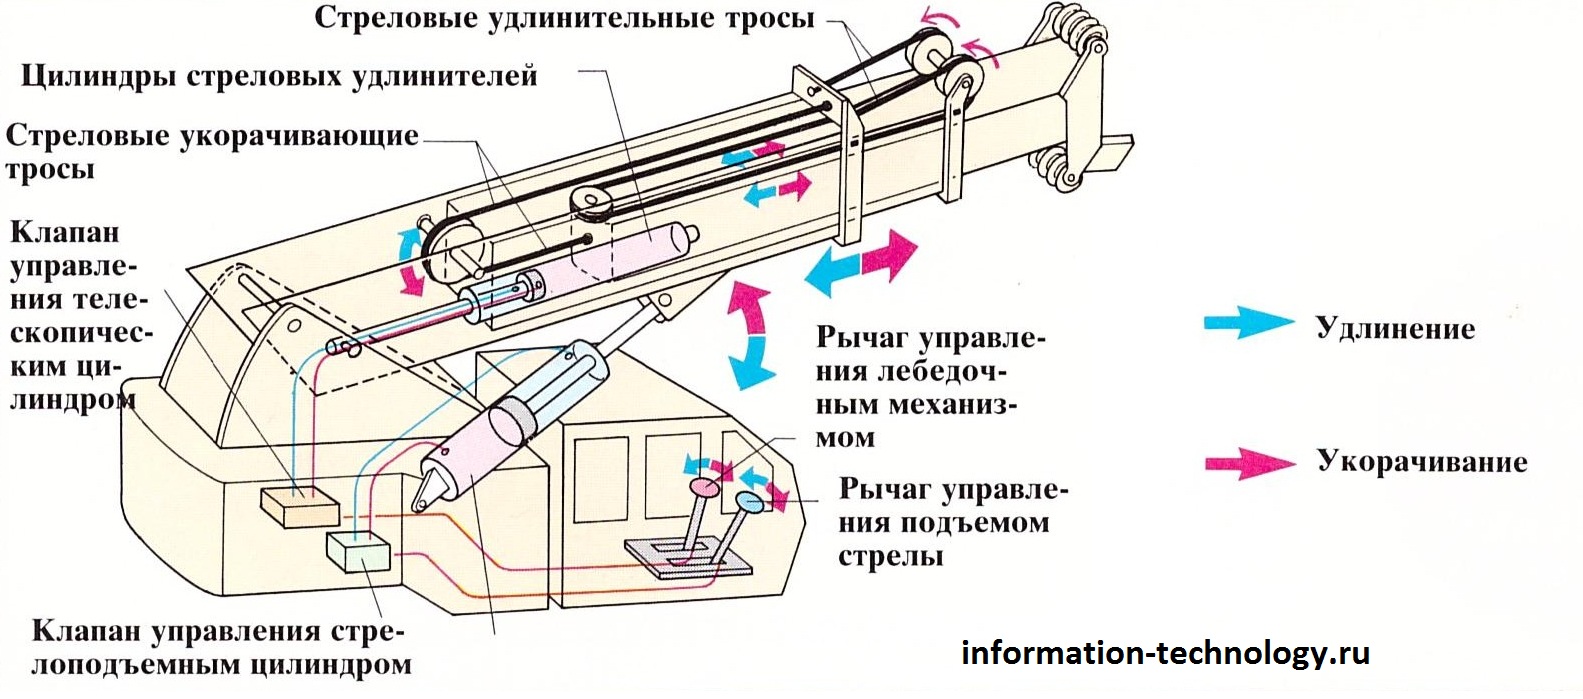 Стрела крана принцип телескопического устройства